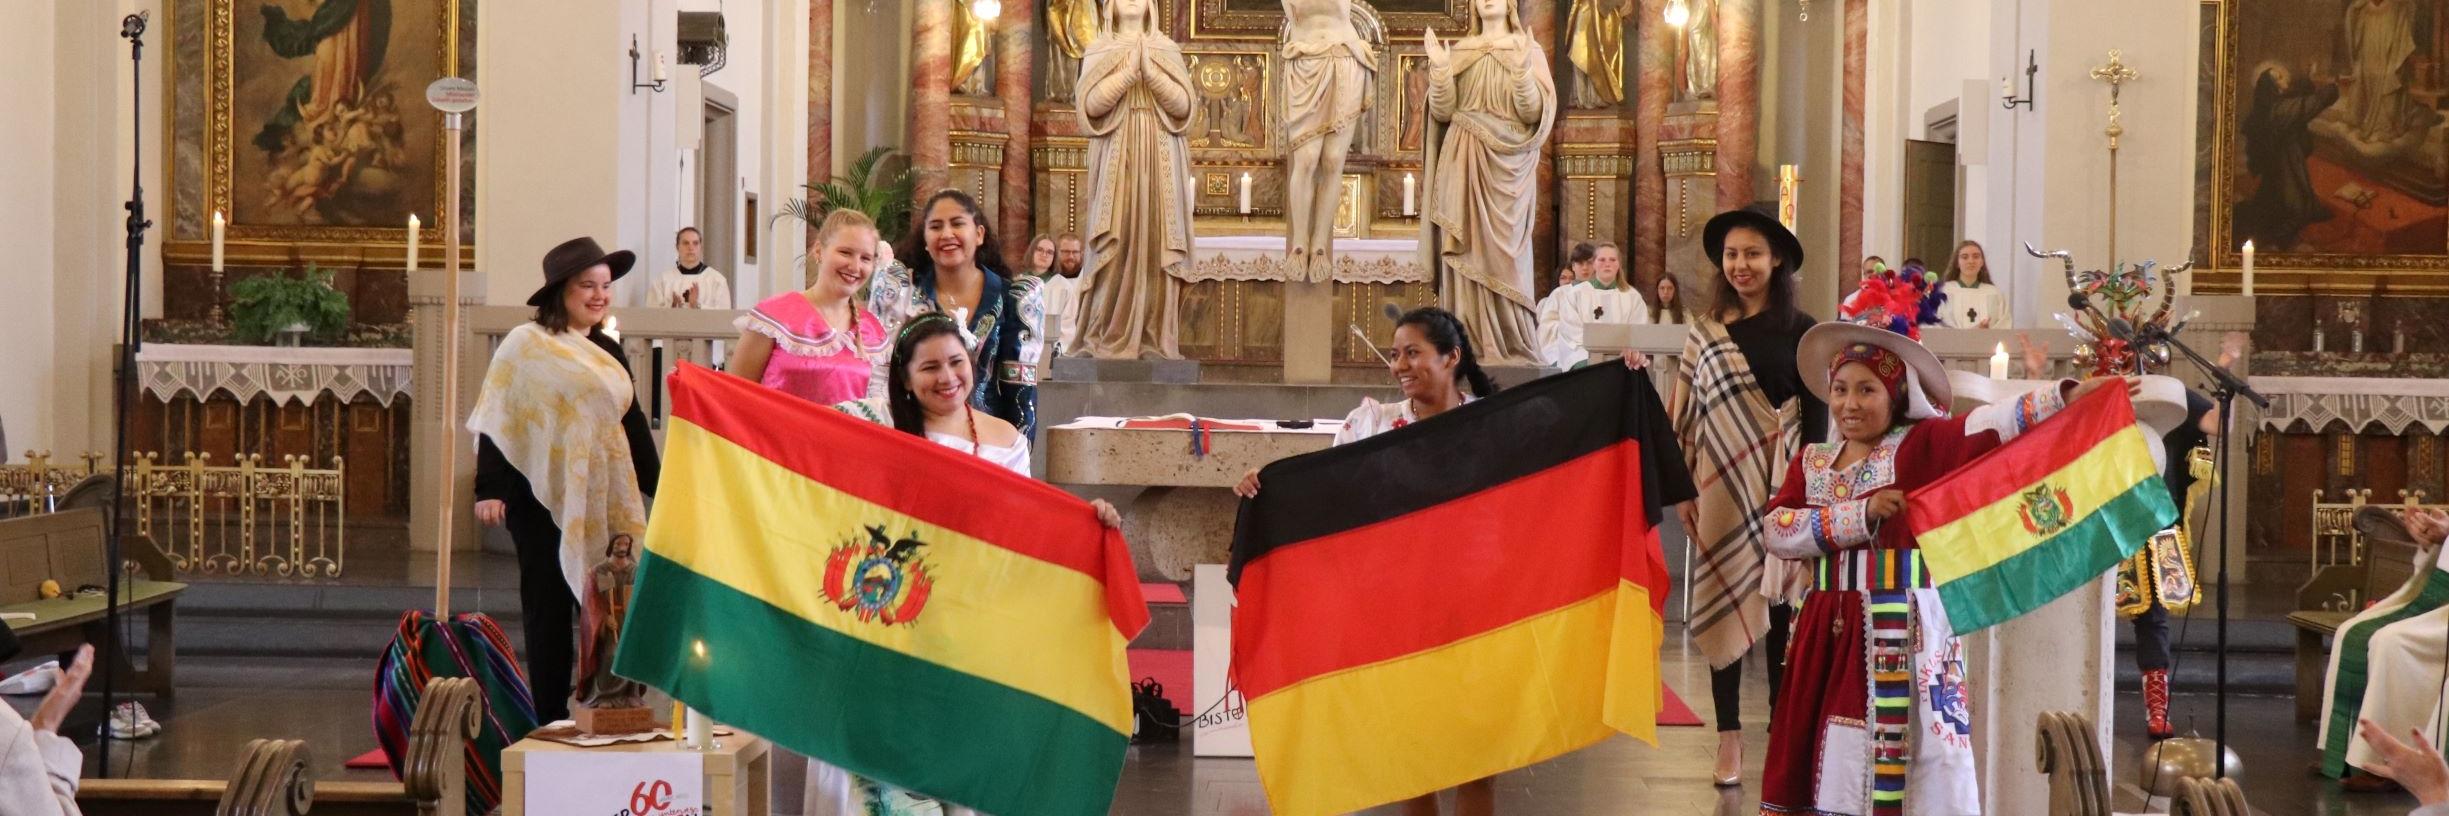 Volunteers aus verschiedenen Diözesen Boliviens, die sich für ein Jahr im Sozialen Friedensdienst im Bistum Trier engagieren, sind derzeit zu Gast. (Foto: Achim Schmitt)